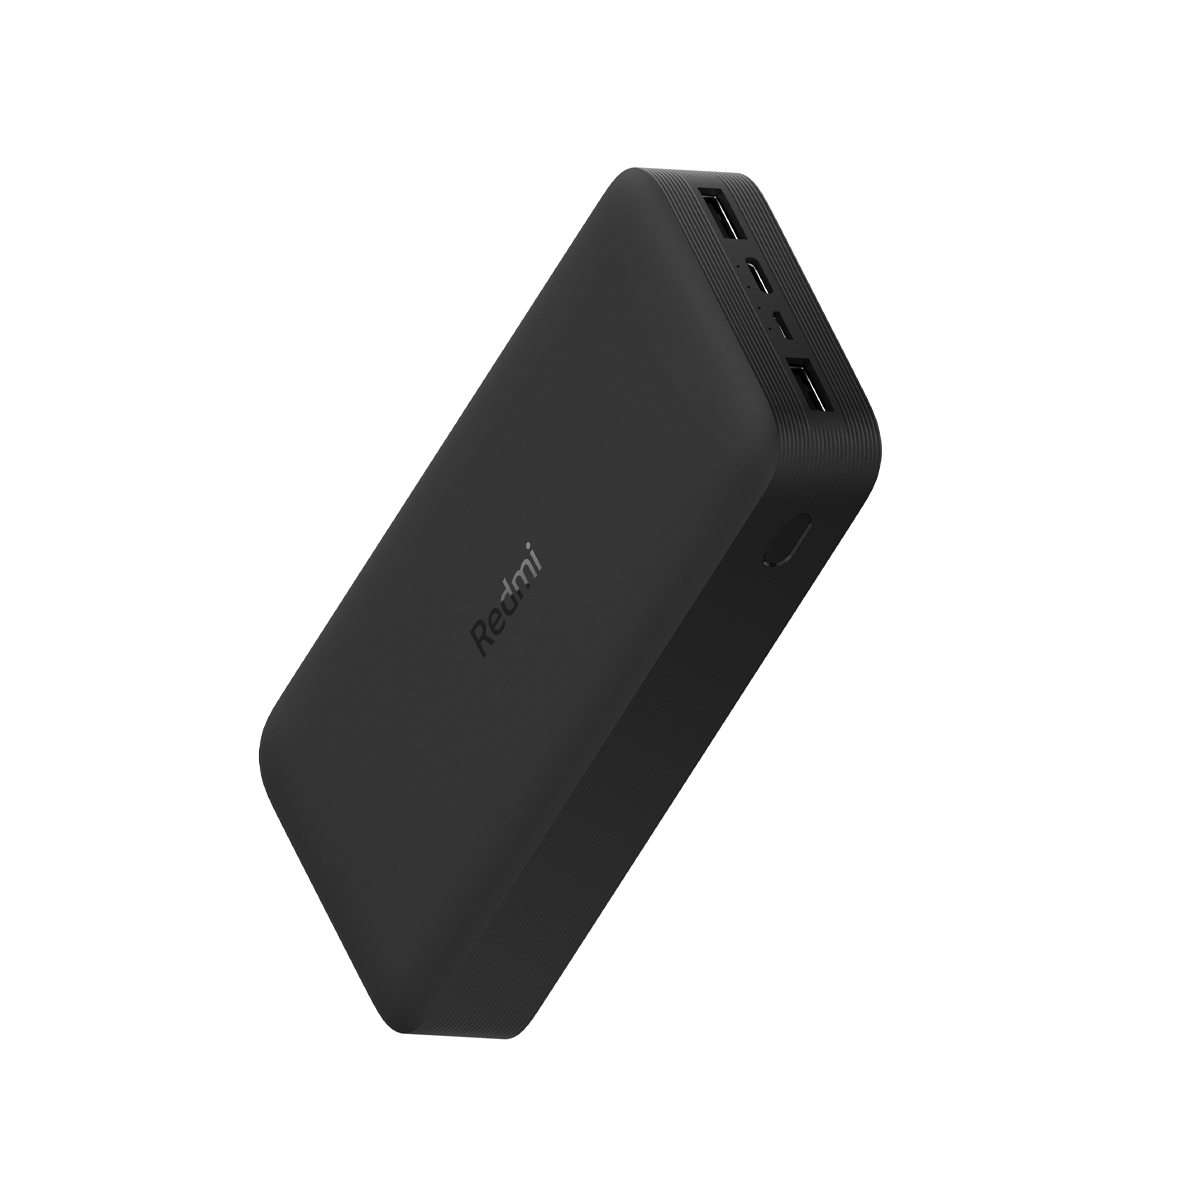 Xiaomi Redmi Powerbank Bateria Externa 20000mah Carga Rapida – Achorao